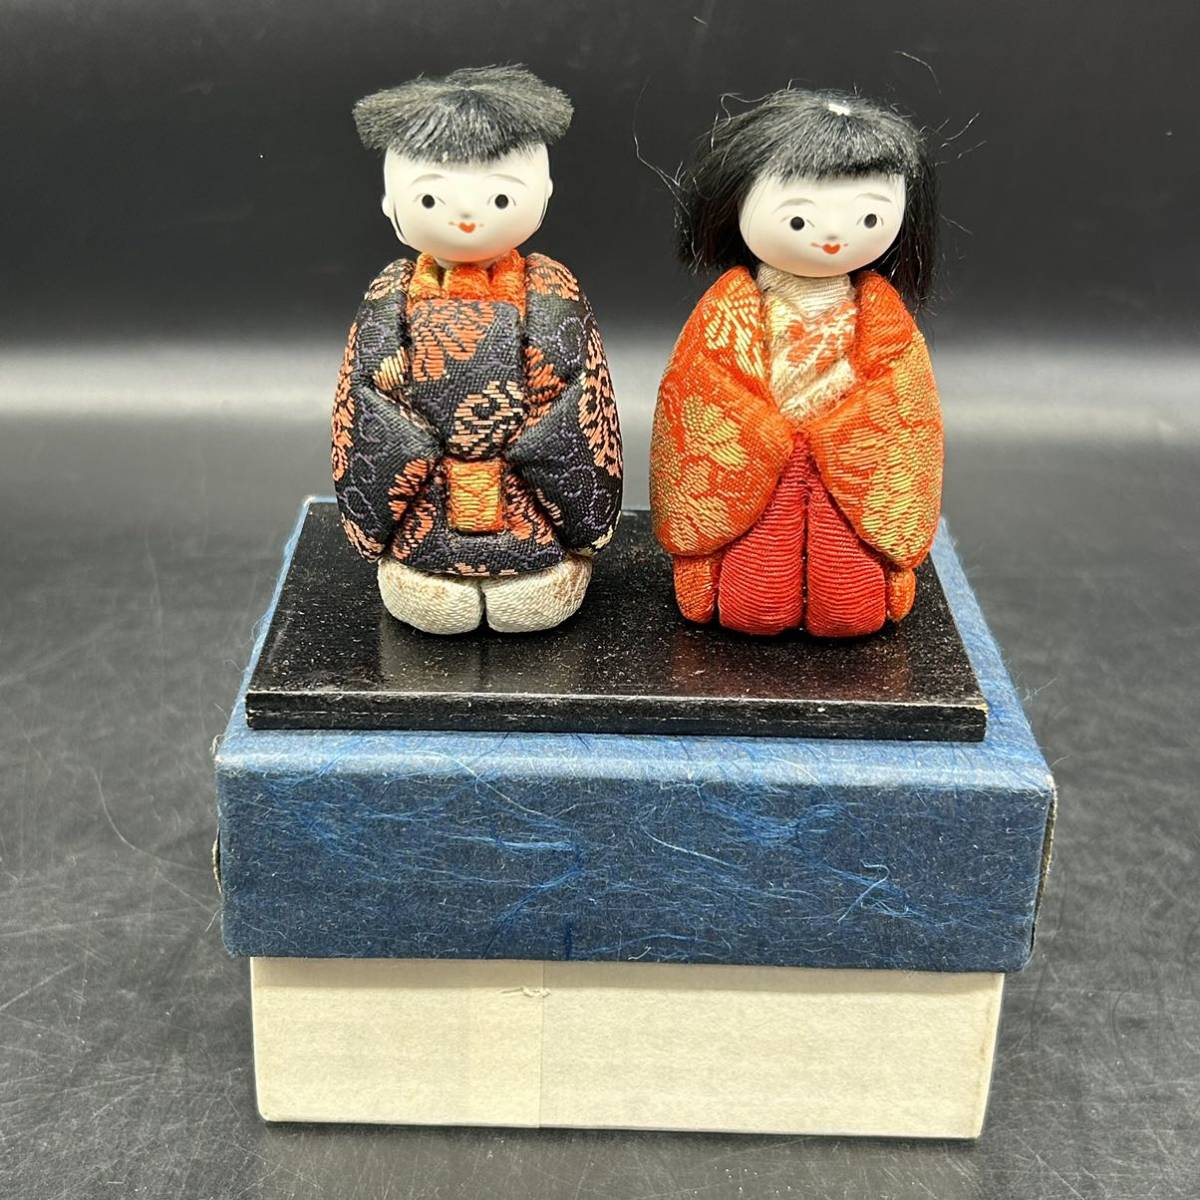 Куклы Кимекоми, Японские куклы периода, Хина Куклы, Мужские и женские пары, Детские куклы, Куклы, Статуэтки, Интерьер, Античный H3, кукла, персонаж куклы, Японская кукла, кукла кимекоми